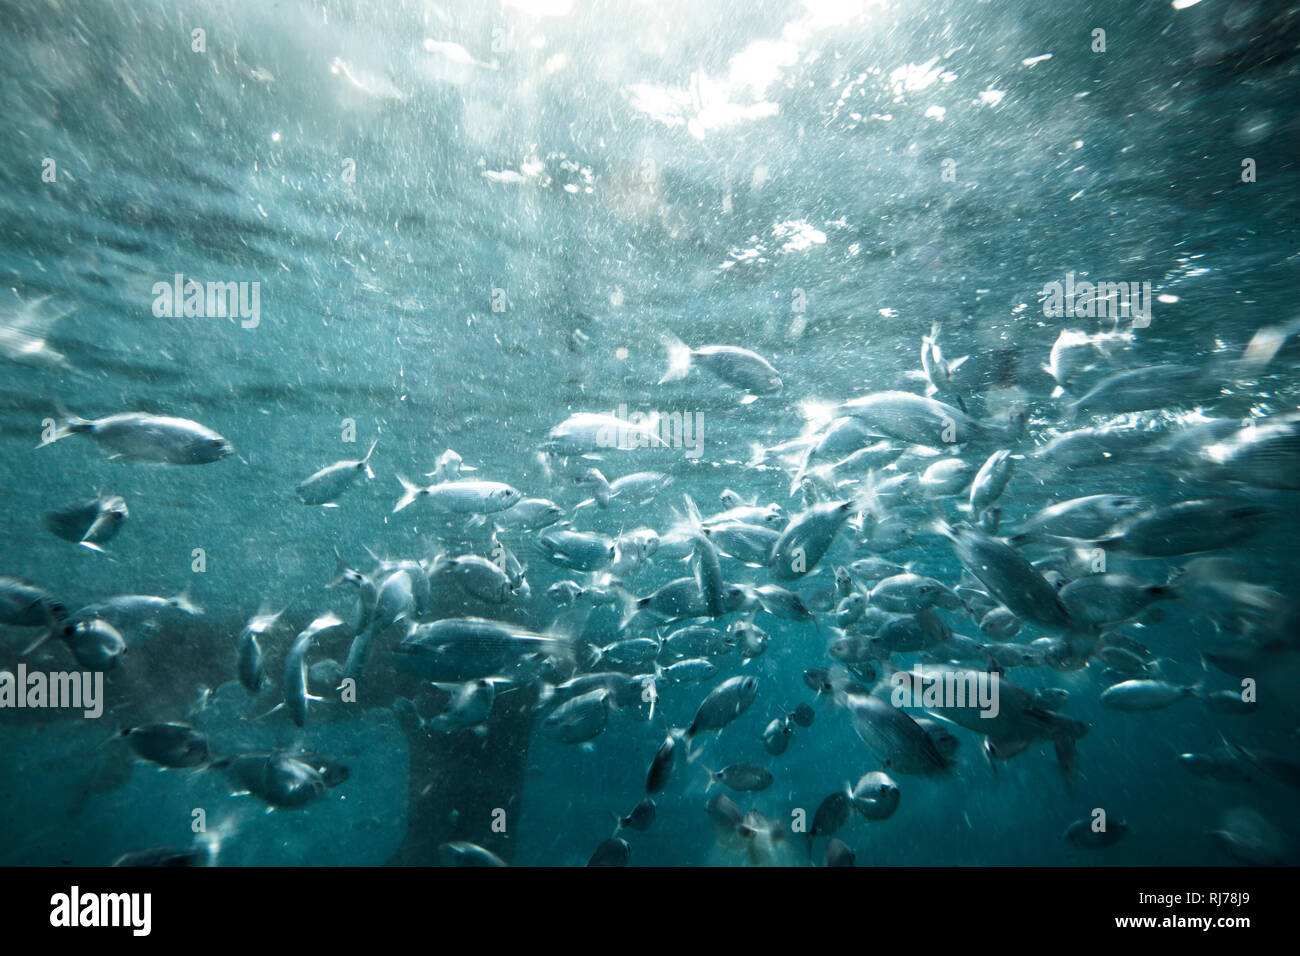 Fischschwarm unter Wasser, Stock Photo